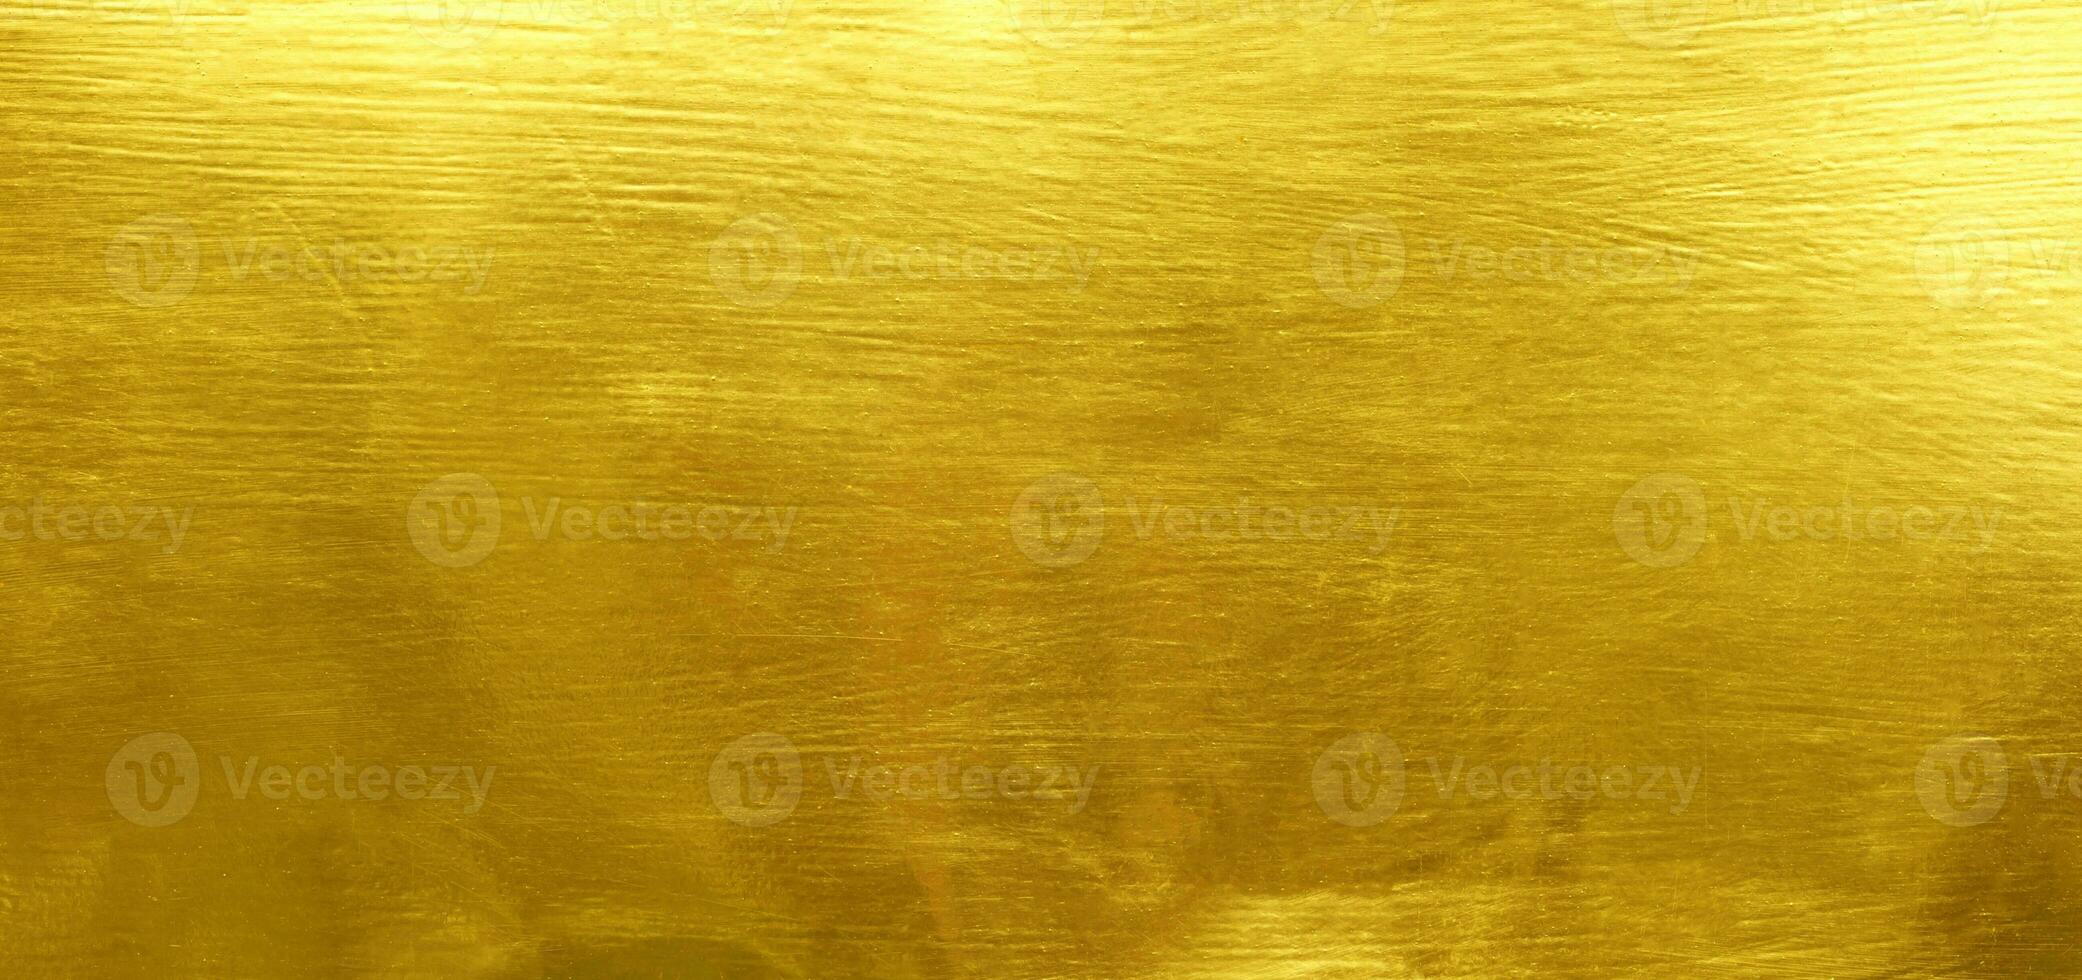 goudfolie textuur achtergrond foto